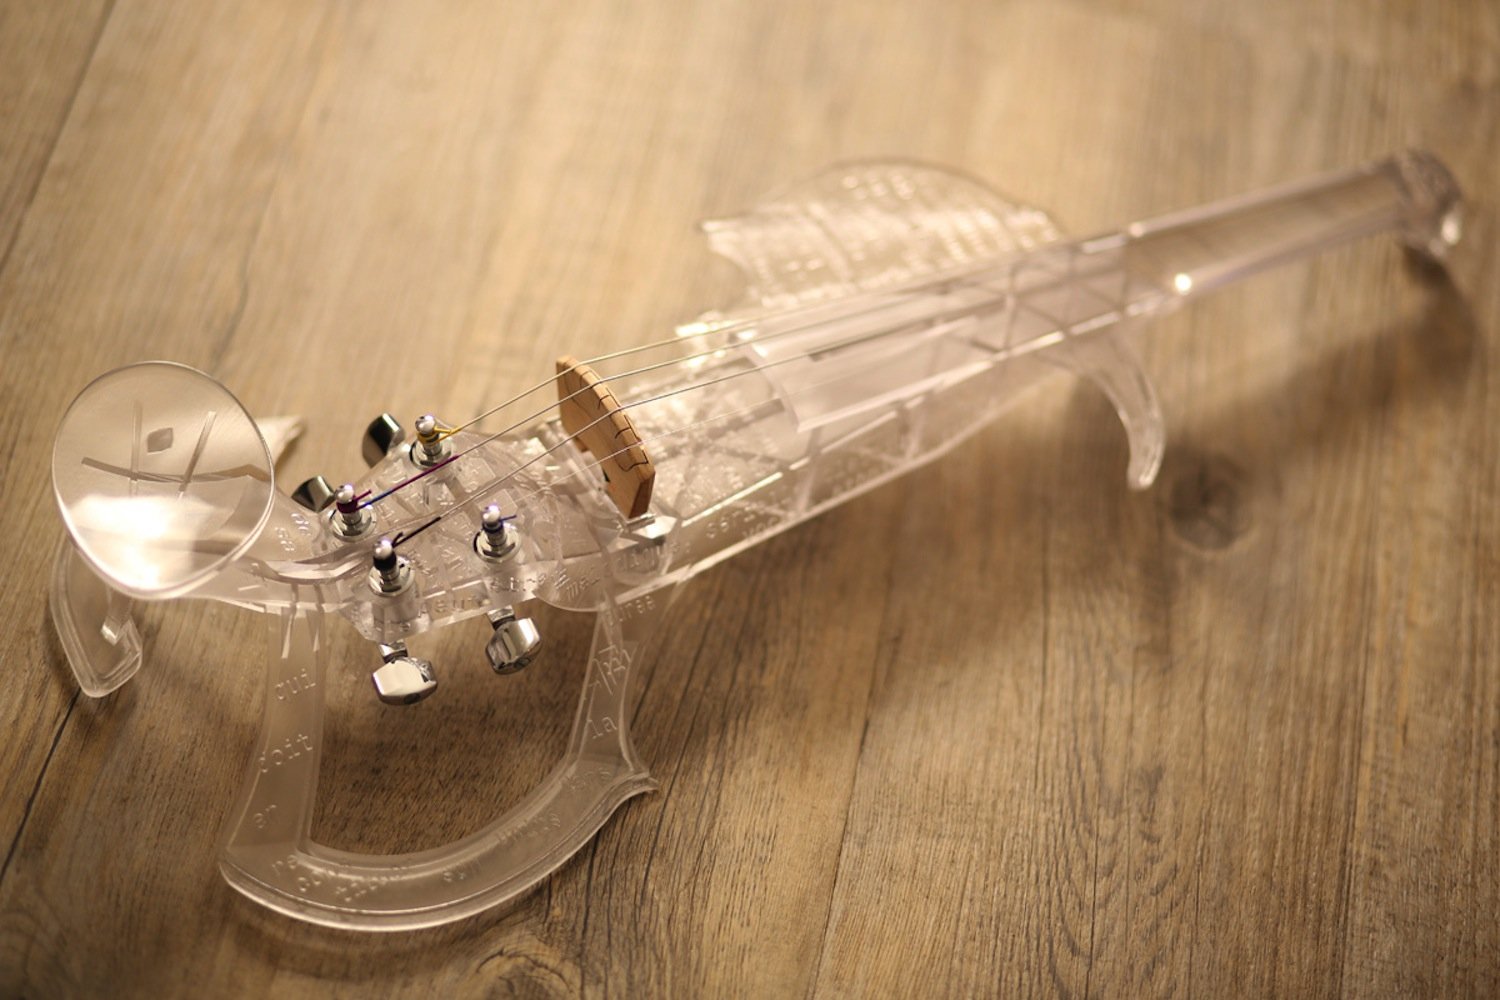 Aktueller Prototyp der 3Dvarius: Der 3D-Drucker SLA 3500 hat die E-Violine mit Kunstharz gedruckt. 